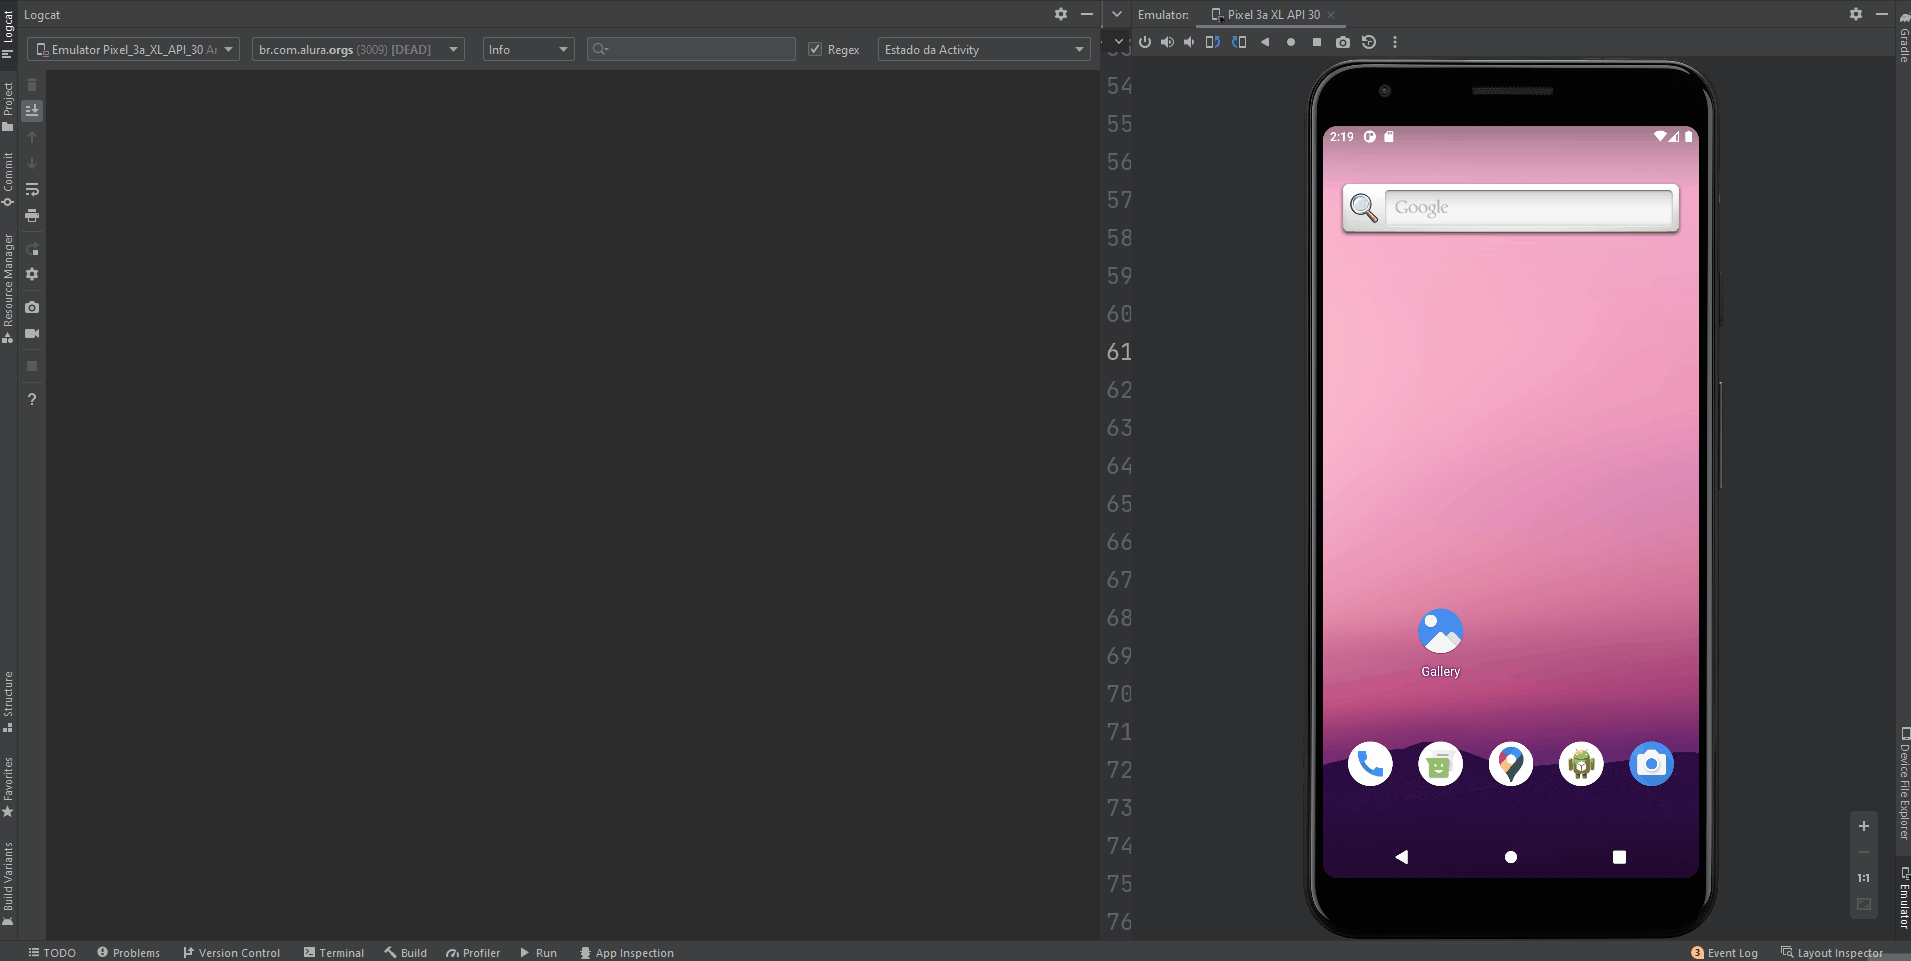 Gif mostrando a tela do Android Studio dividida verticalmente quase ao meio. Do lado direito, temos o emulador representando um celular com o aplicativo Orgs rodando. Na parte esquerda, temos a janela do Logcat mostrando as mensagens de log de informação descritas a seguir que aparecem à medida que são feitas interações com o aplicativo.